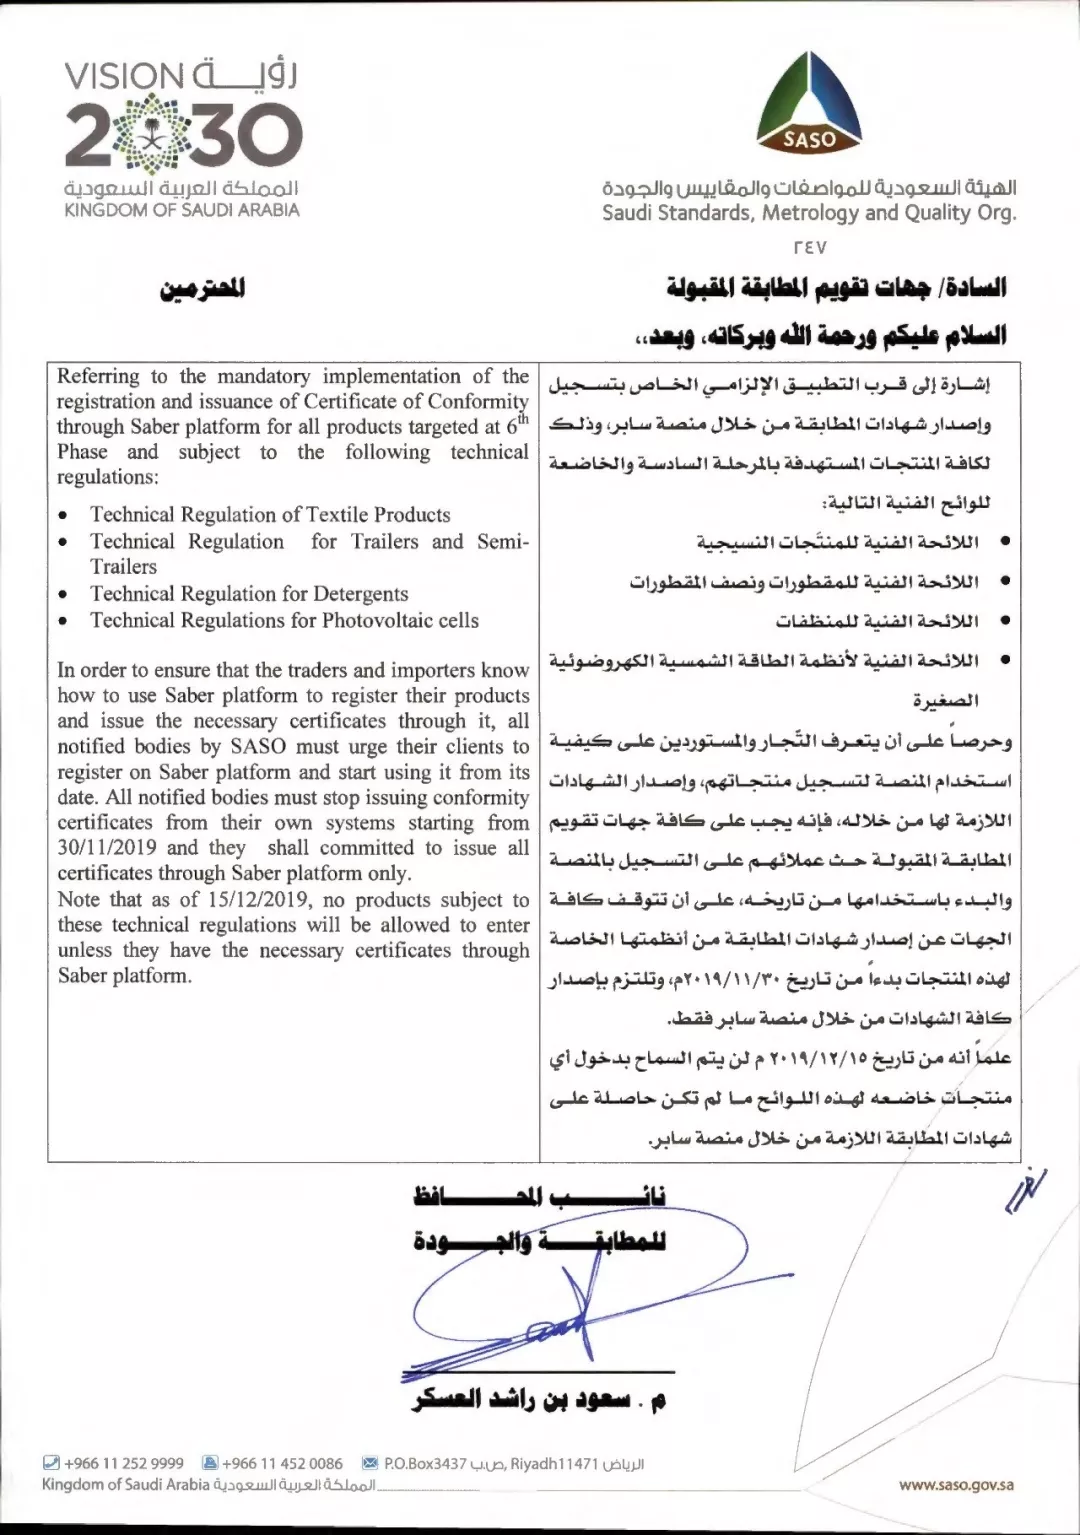 出口沙特产品强制SABER注册最新执行通知